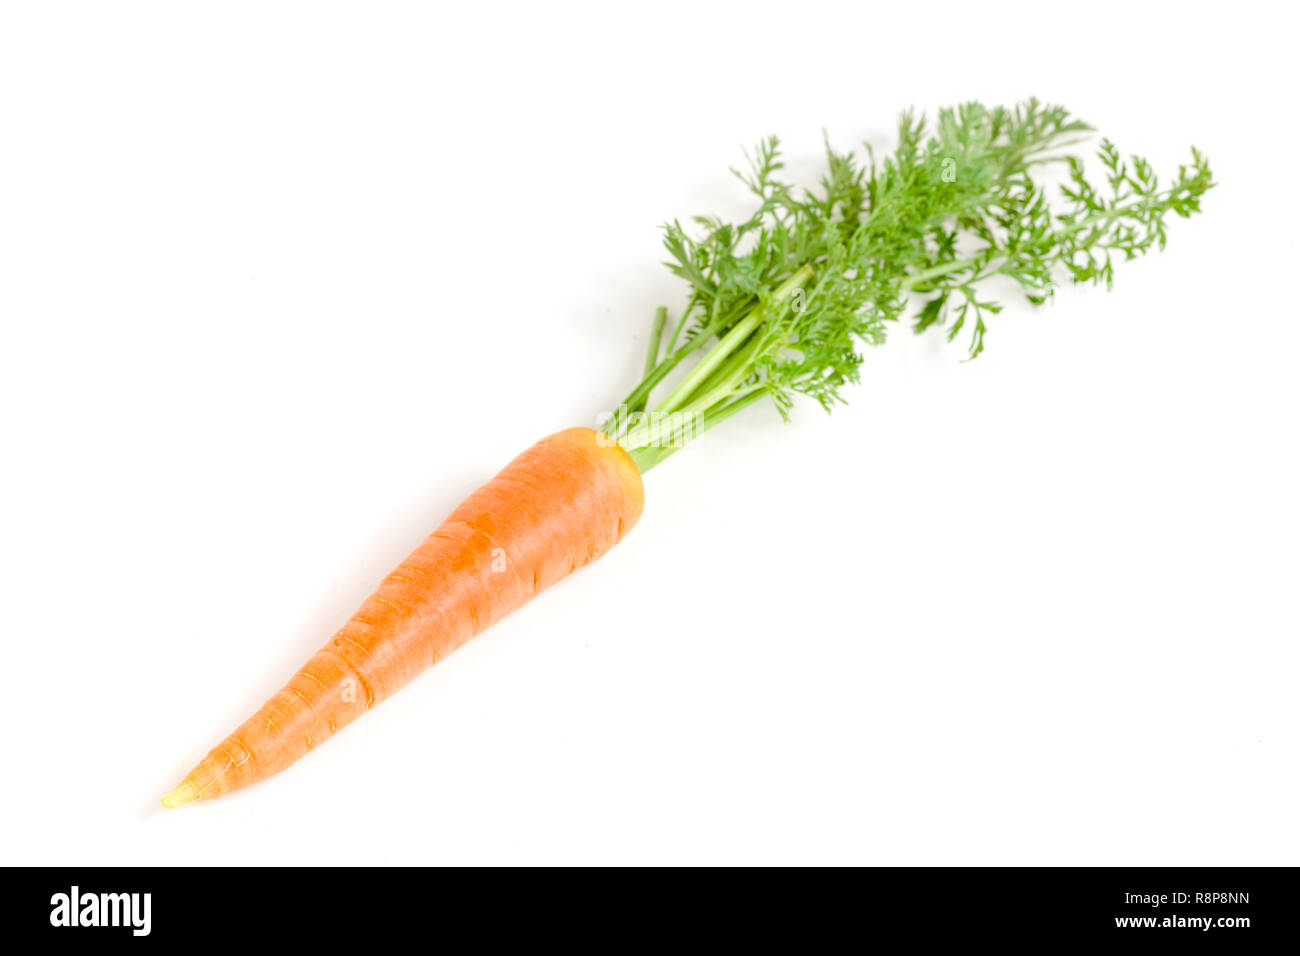 Vegetali di carota con foglie isolati su sfondo bianco Foto Stock